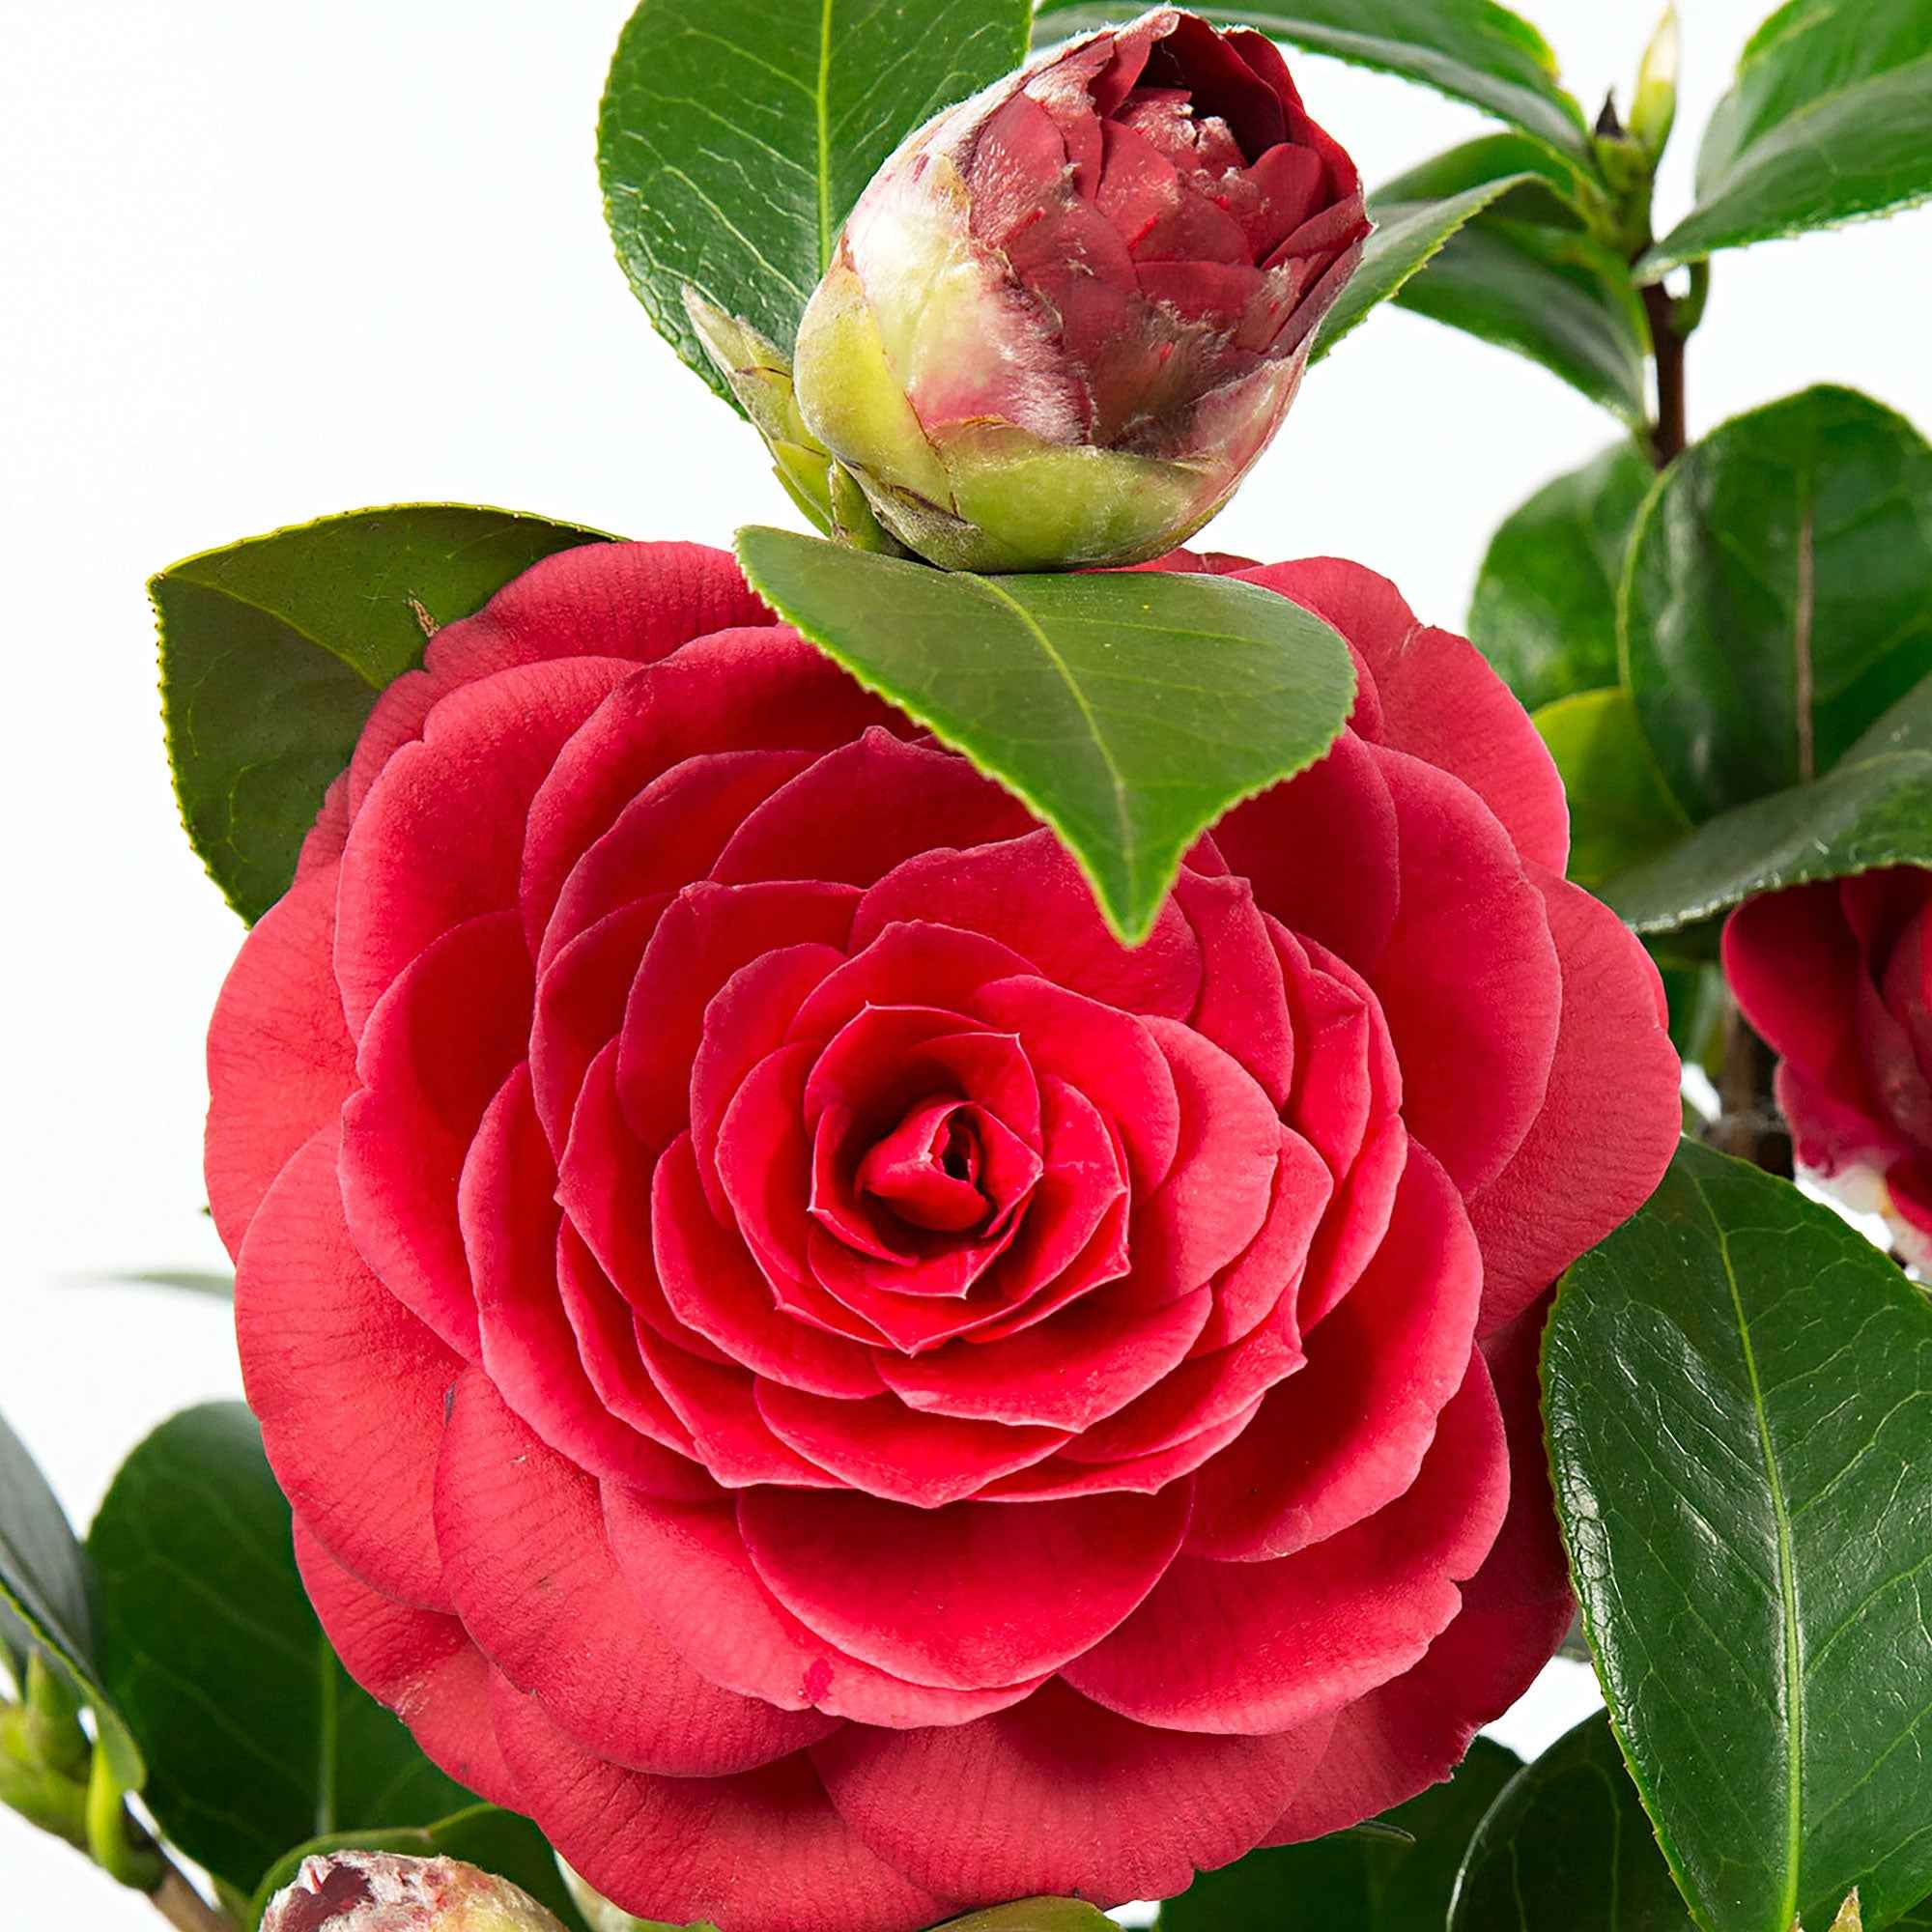 Camelia Camellia japonica Lace' incl. sierpot - kopen | Bakker.com